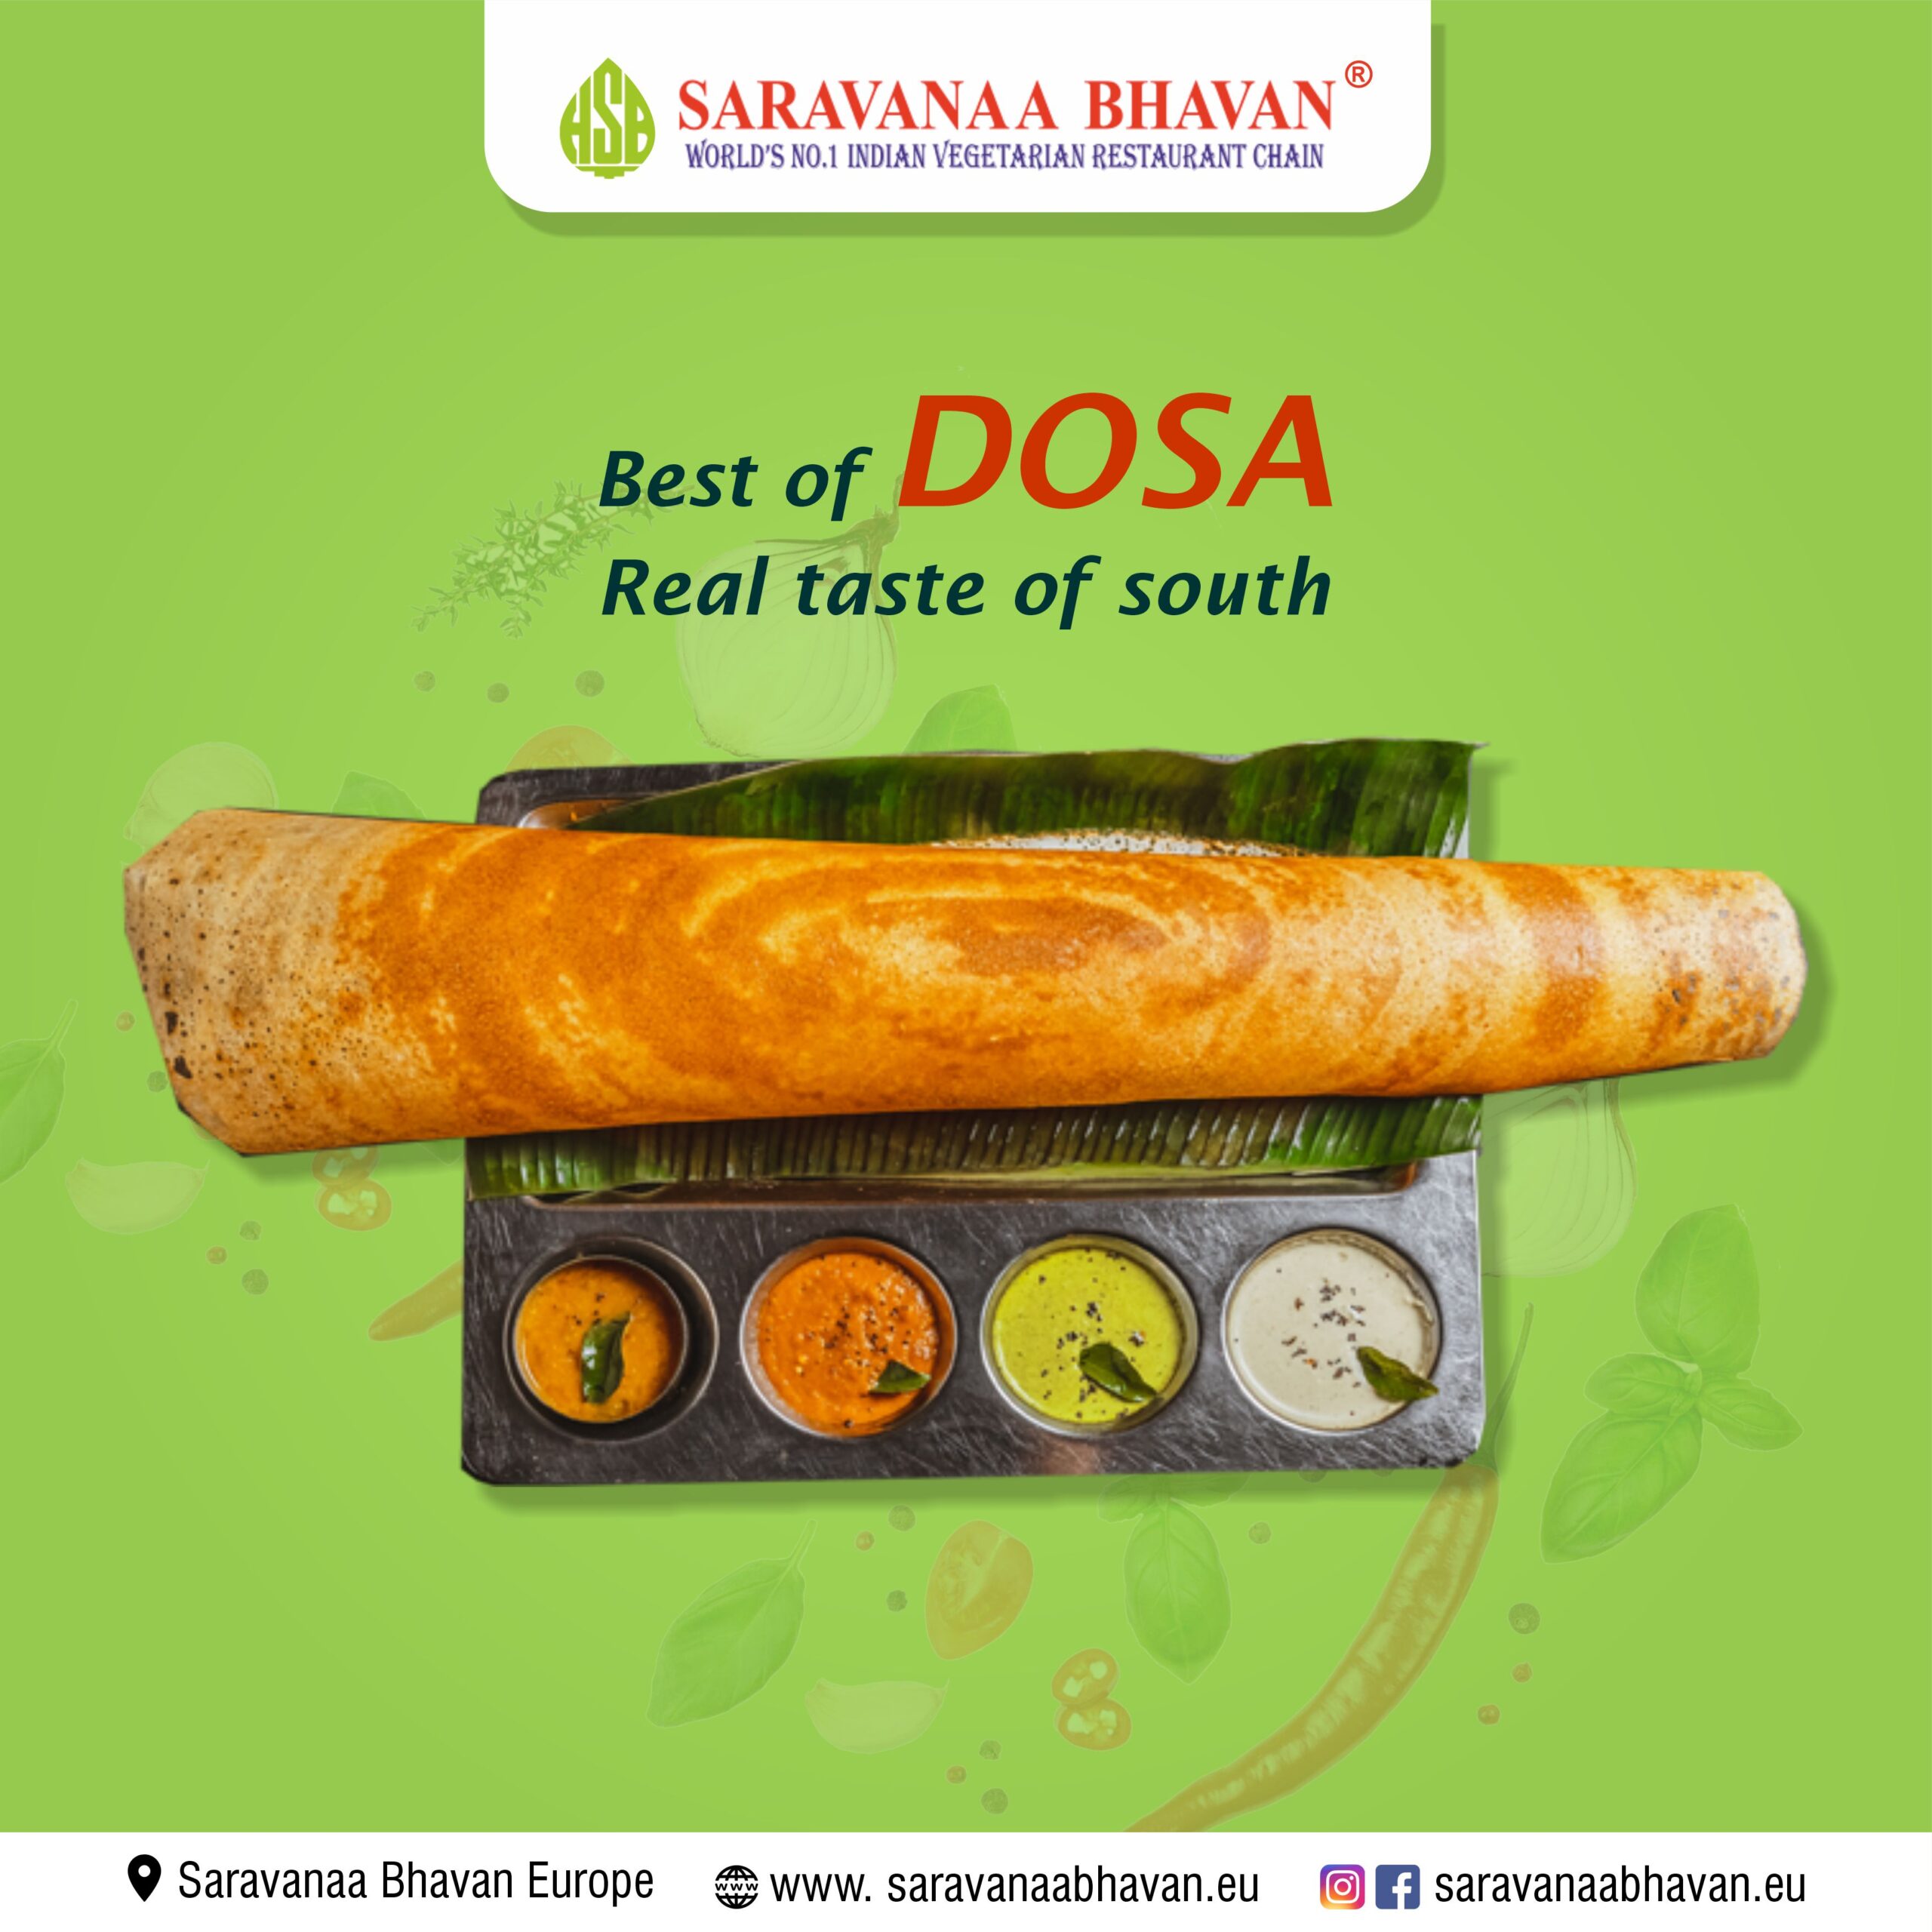 Saravanaa Bhavan Dosa: The Way To Enjoy The South Indian Food